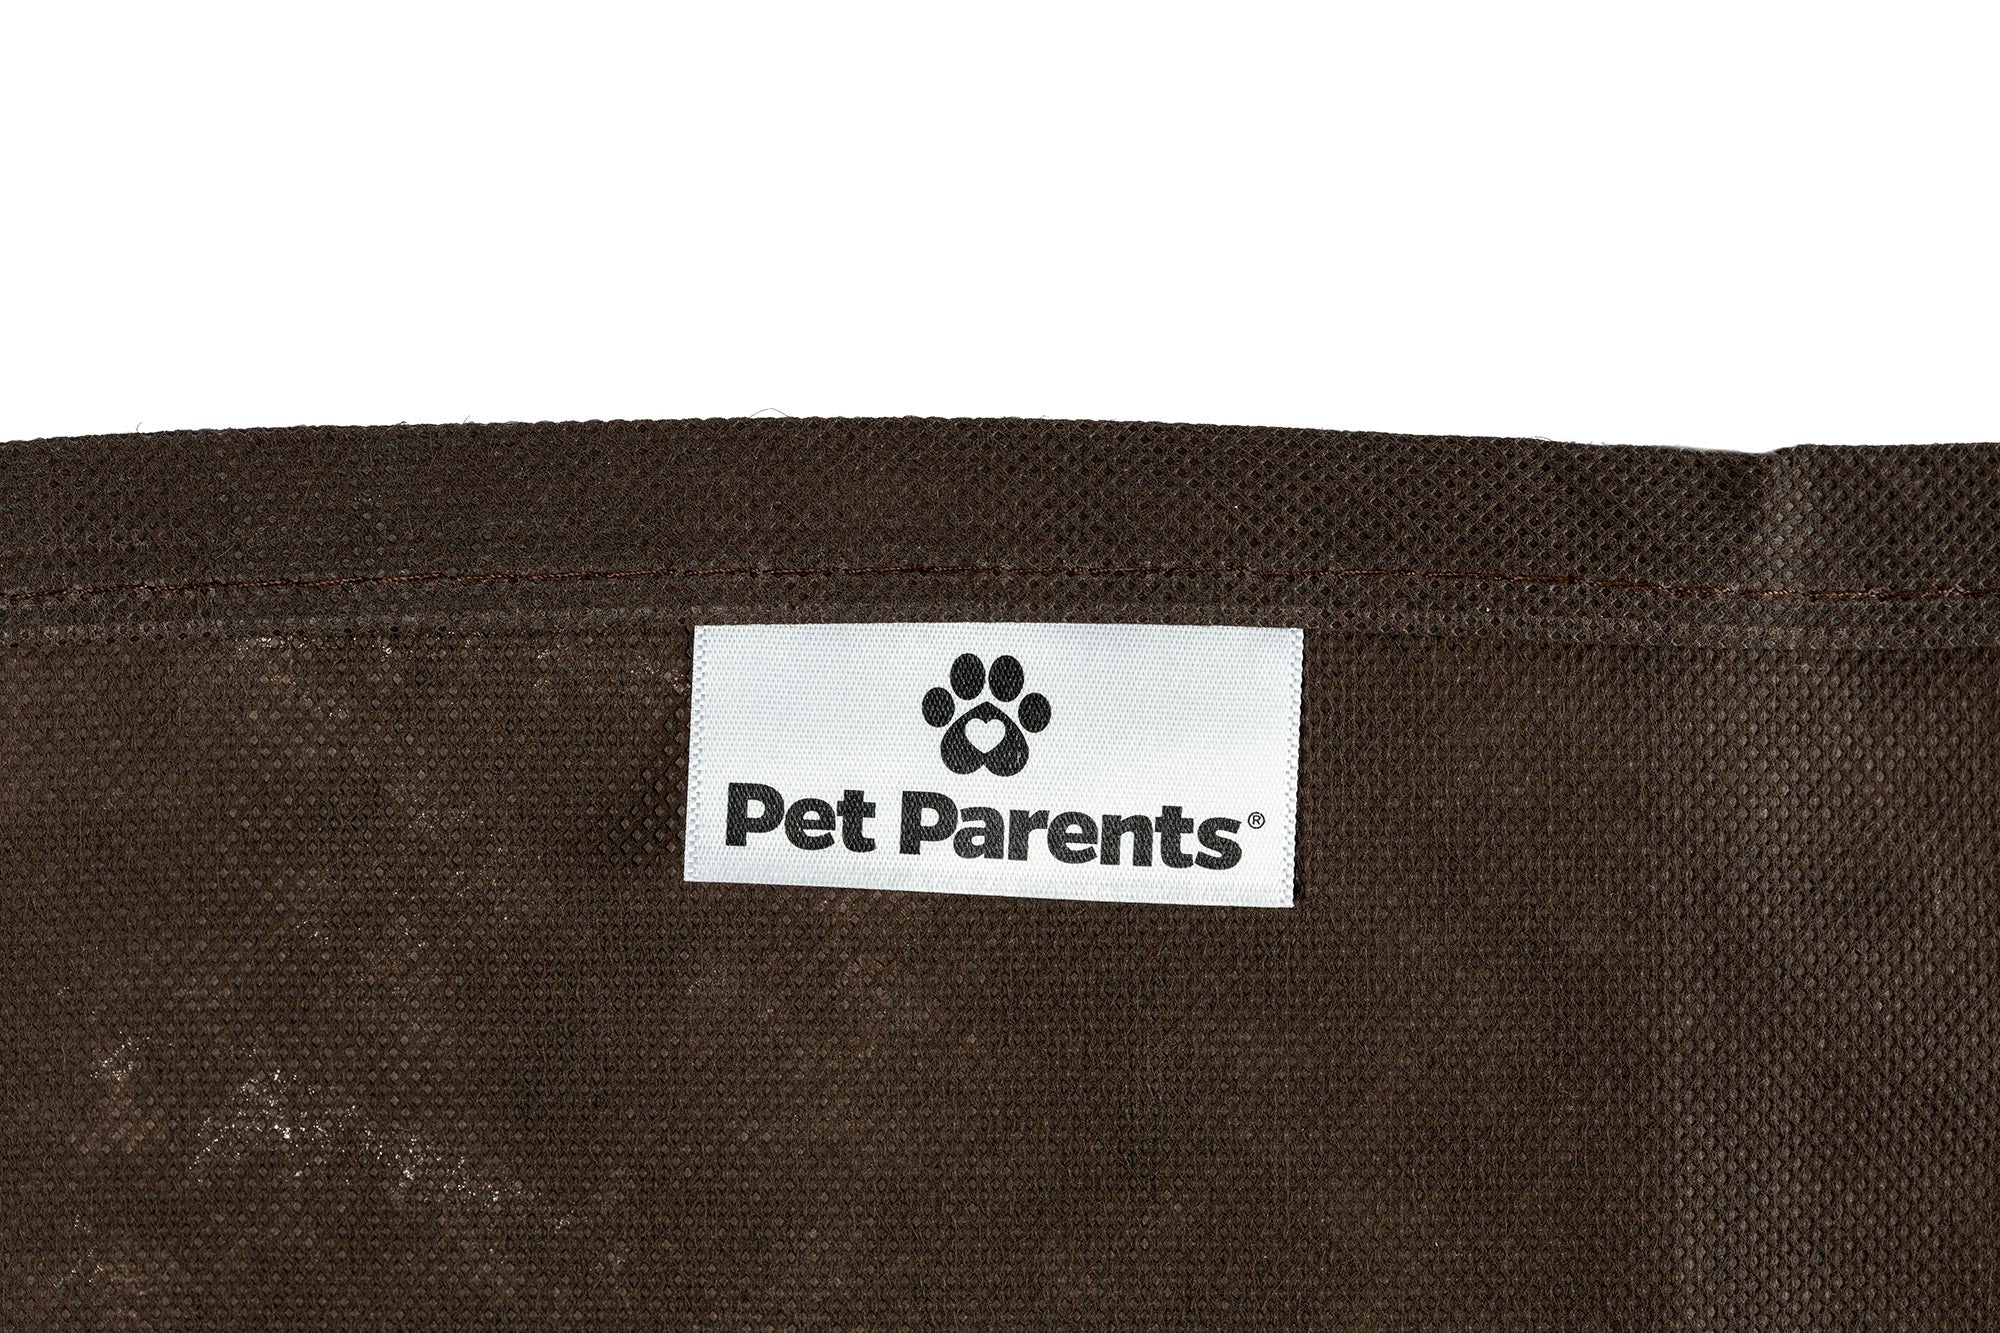 Pet Parents® Pet repeller